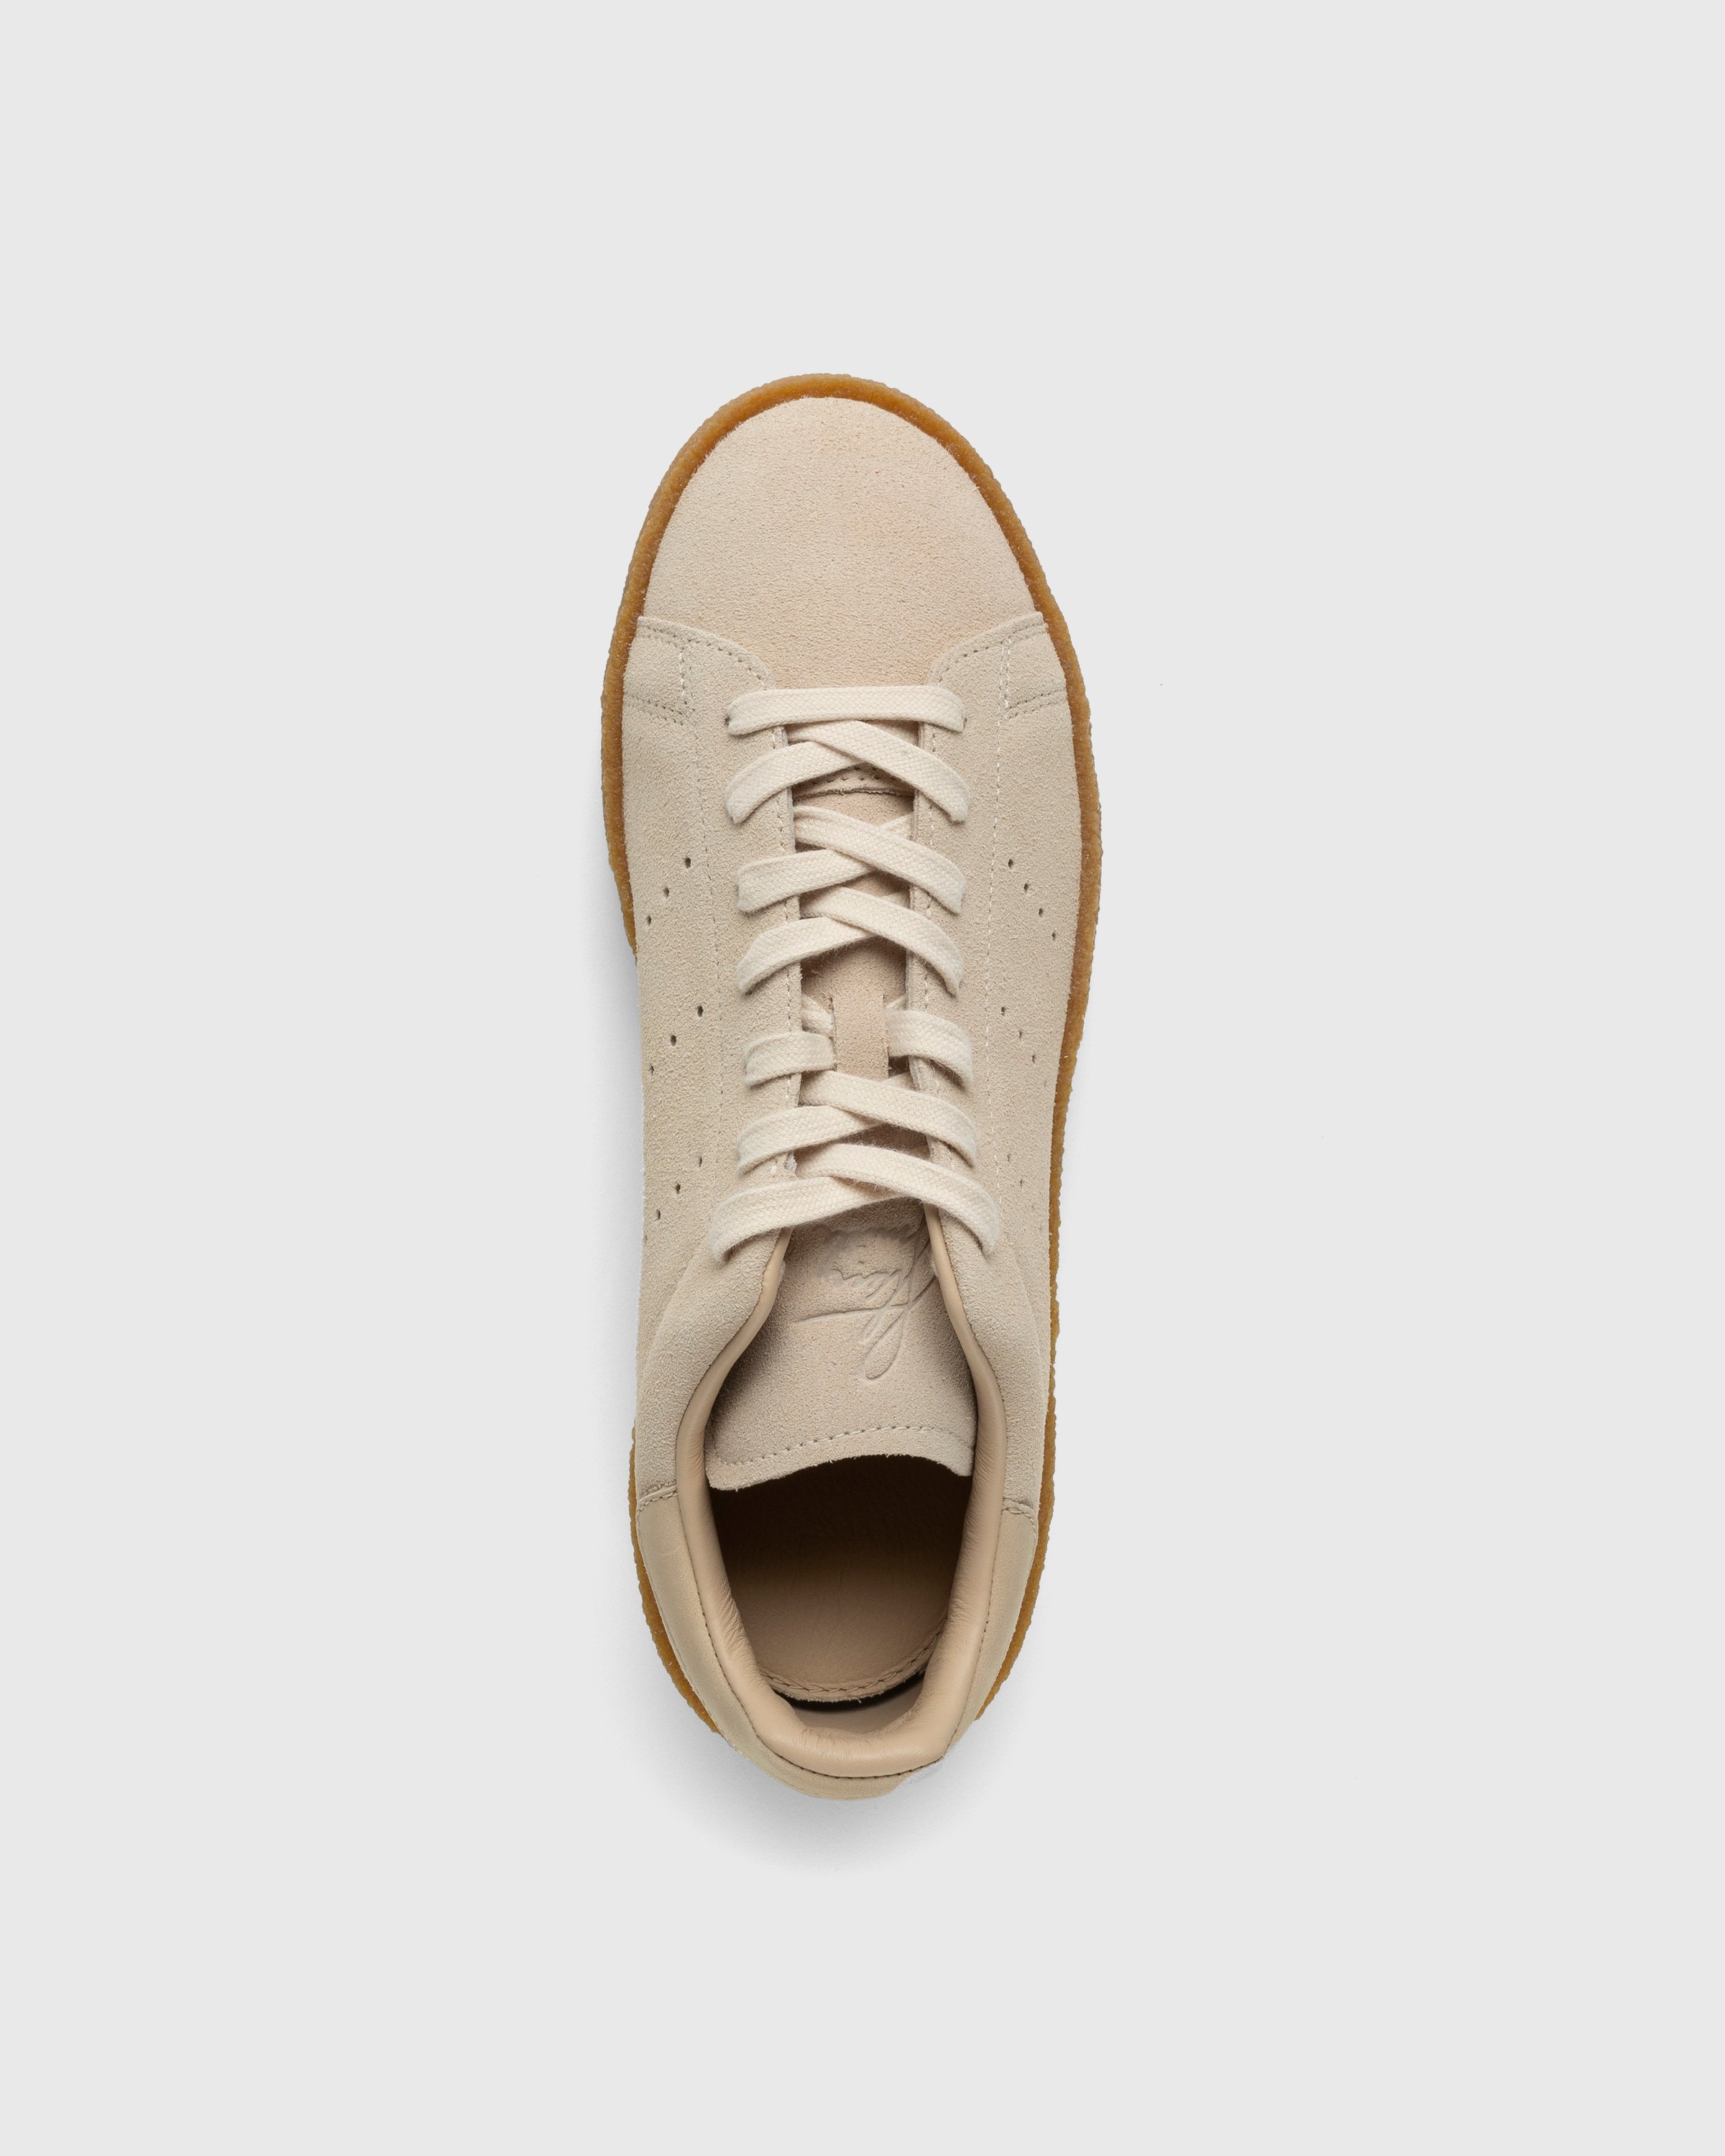 Adidas - Stan Smith Crepe Beige - Footwear - Beige - Image 5